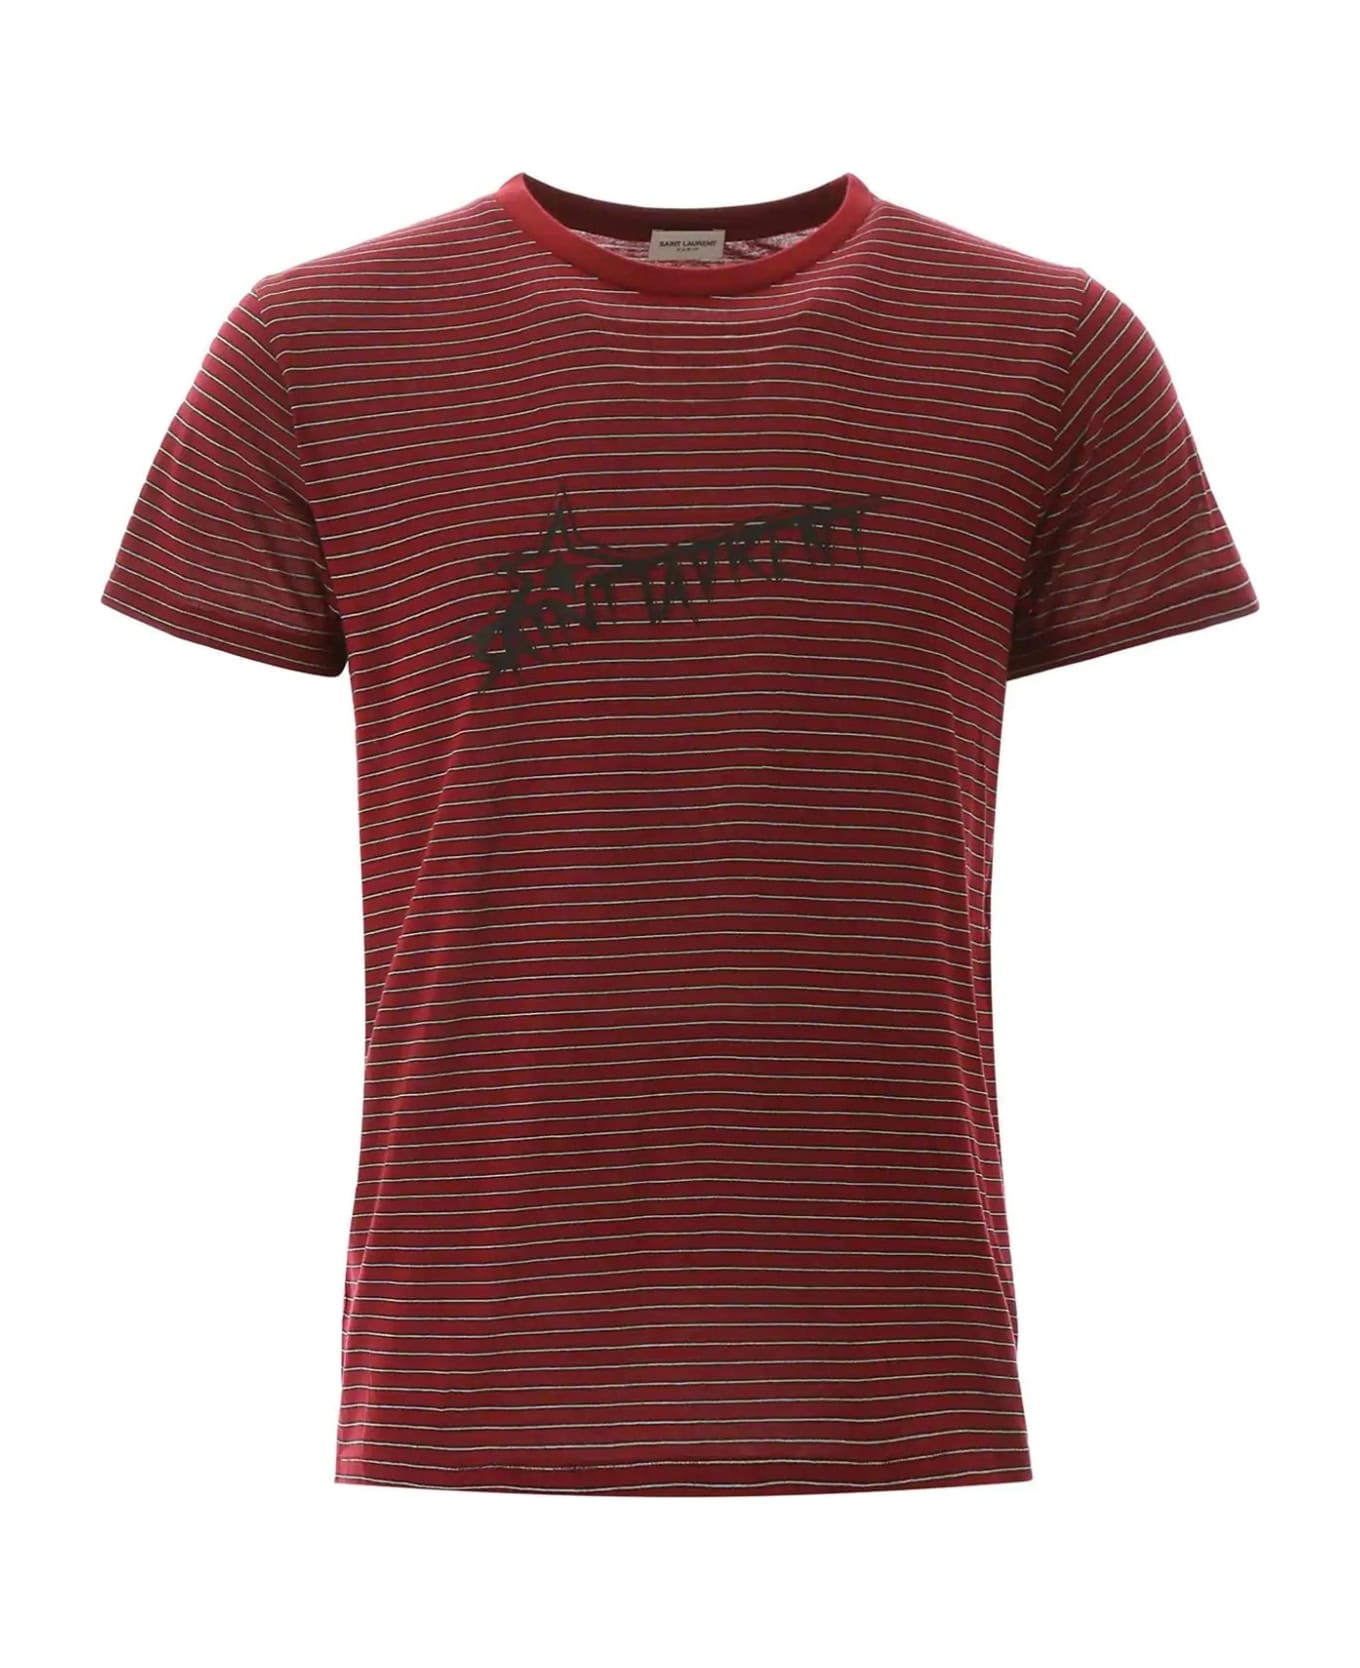 Saint Laurent Cotton Logo T-shirt - Red